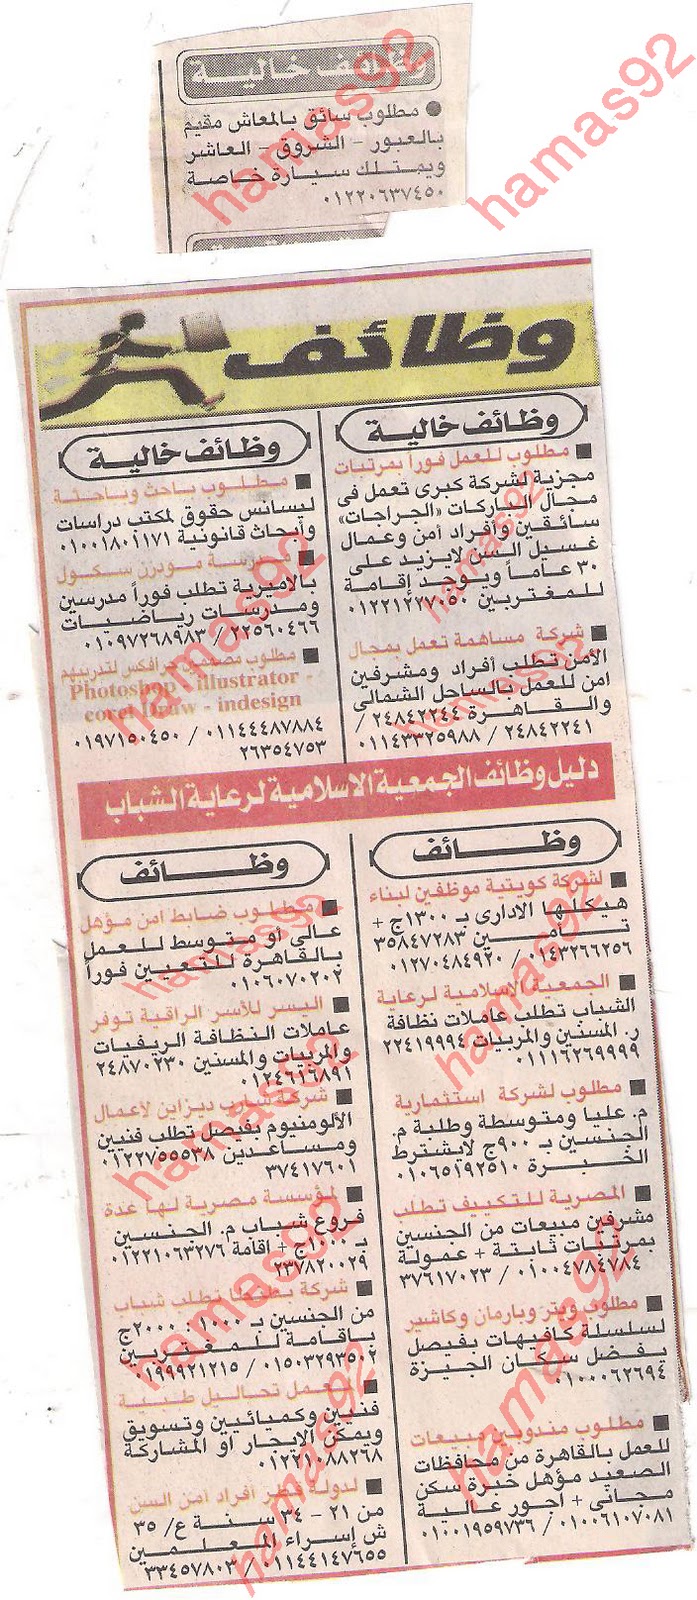 حمل جميع وظائف صحف مصر كاملة السبت 29\10\2011  Picture+003